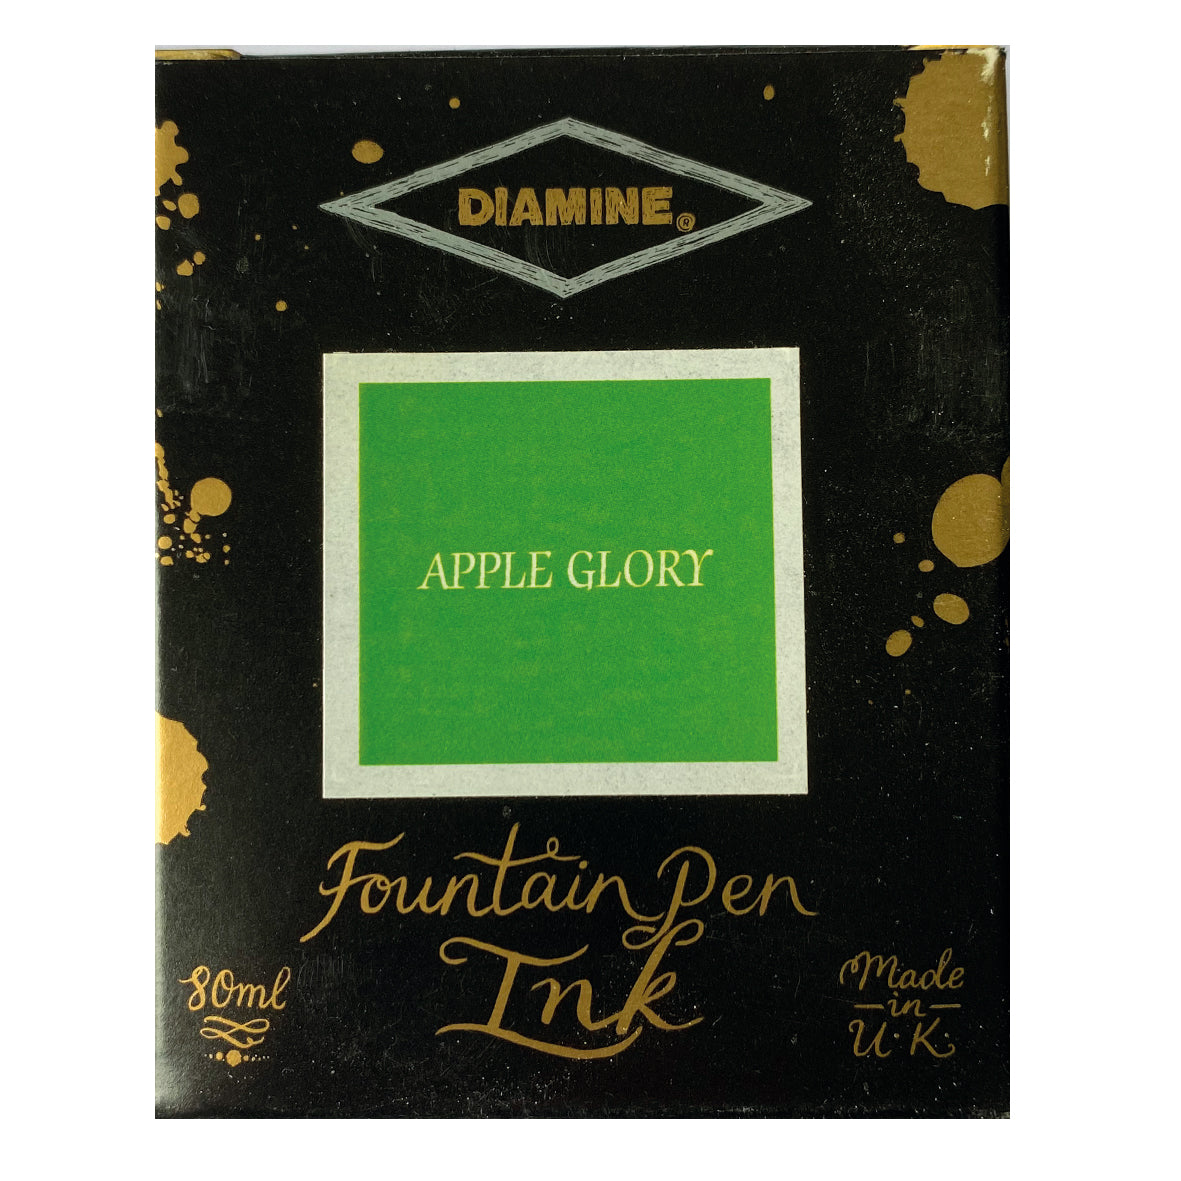 Tintenglas Diamine Apple Glory, 80 ml